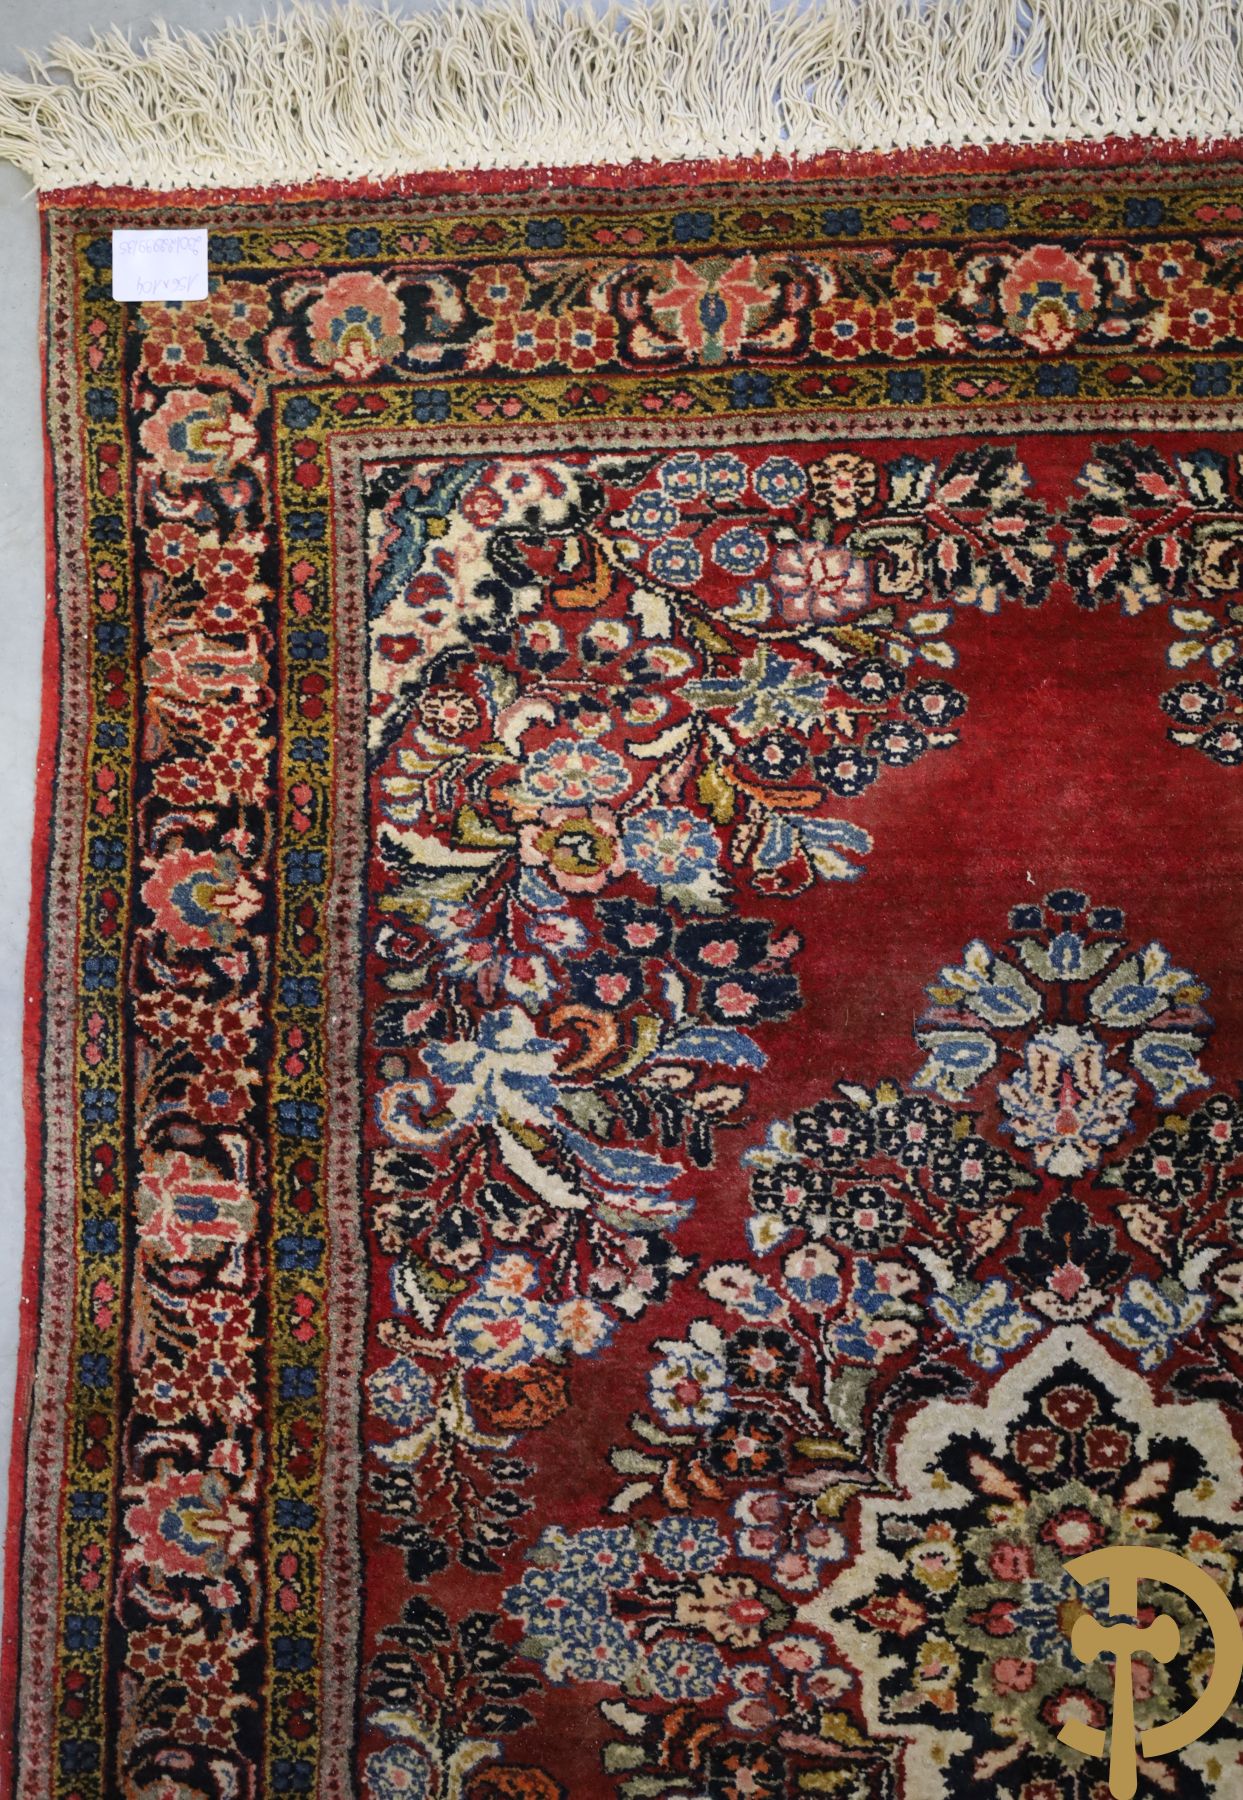 Oosters handgeknoopt tapijt met rode fond en bloementafereel